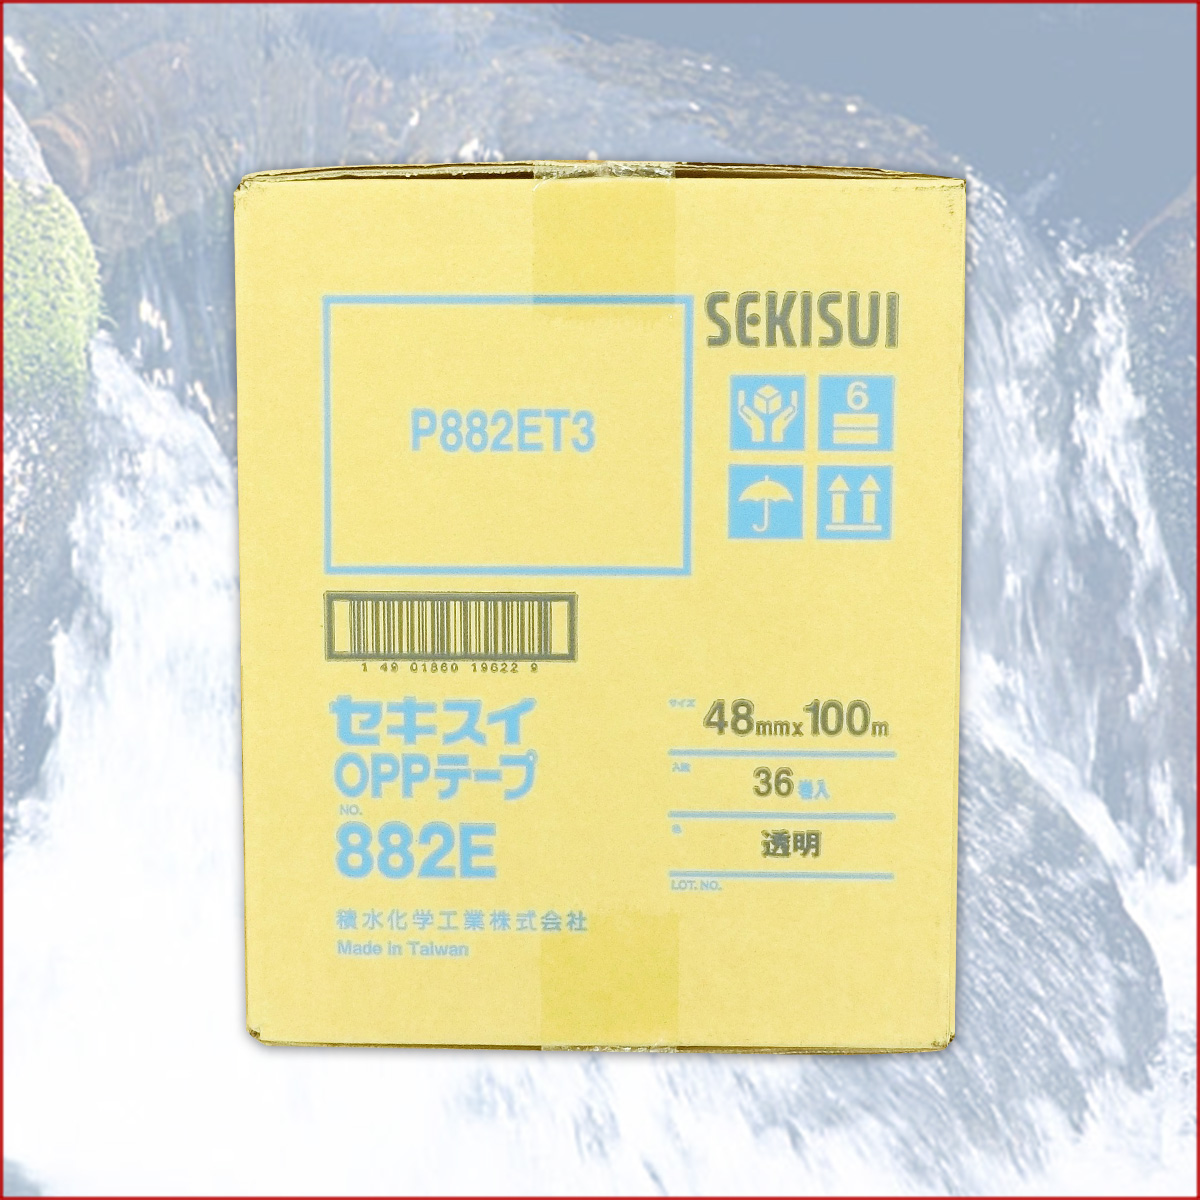 セキスイ OPPテープ No.882E × 36巻 【積水化学】【P882ET3】 | エコ肥料店